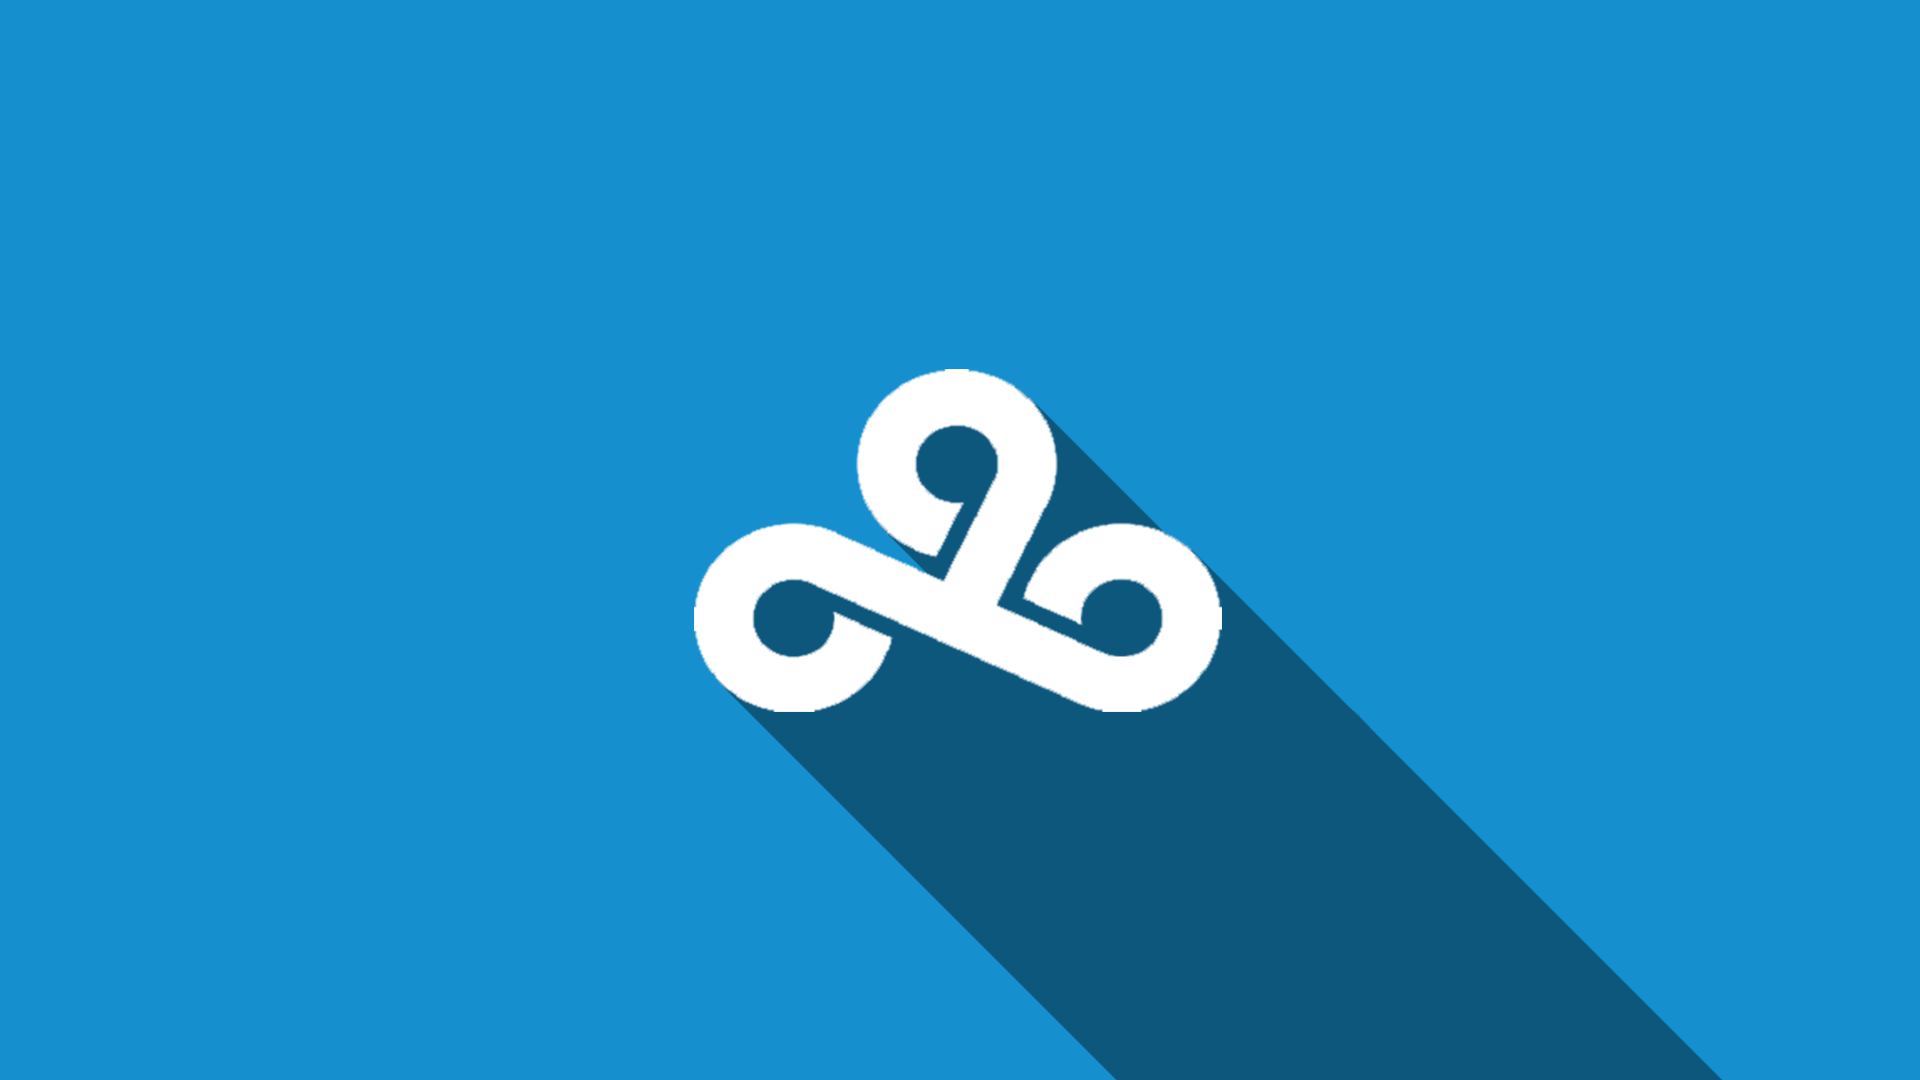 Наклейки cloud9. Cloud9 знак. Логотип cloud9. Наклейка Клауд 9. Cloud9 (киберспортивная организация).